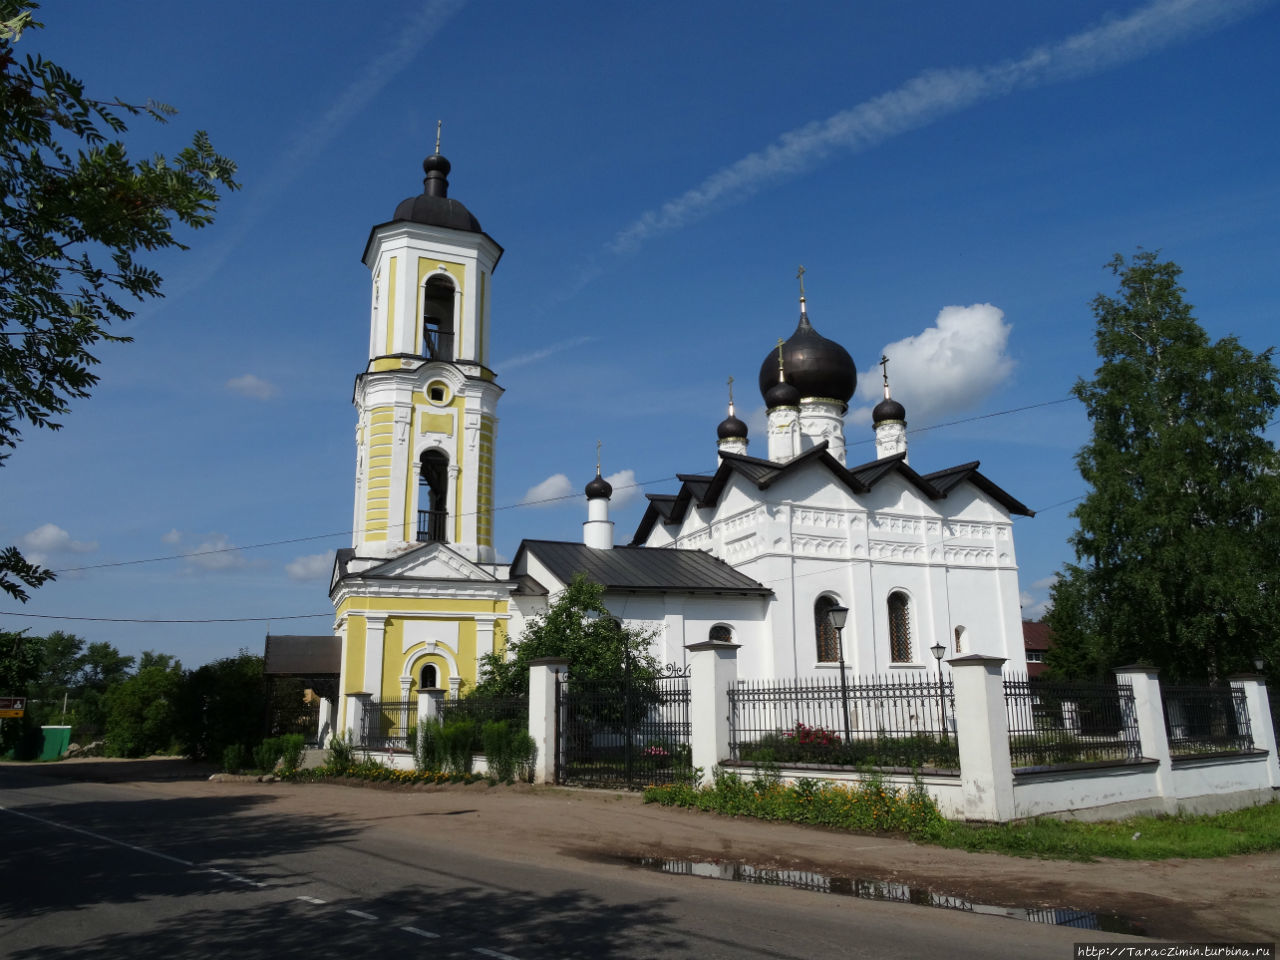 Никольская церковь / The Church of St. Nicholas